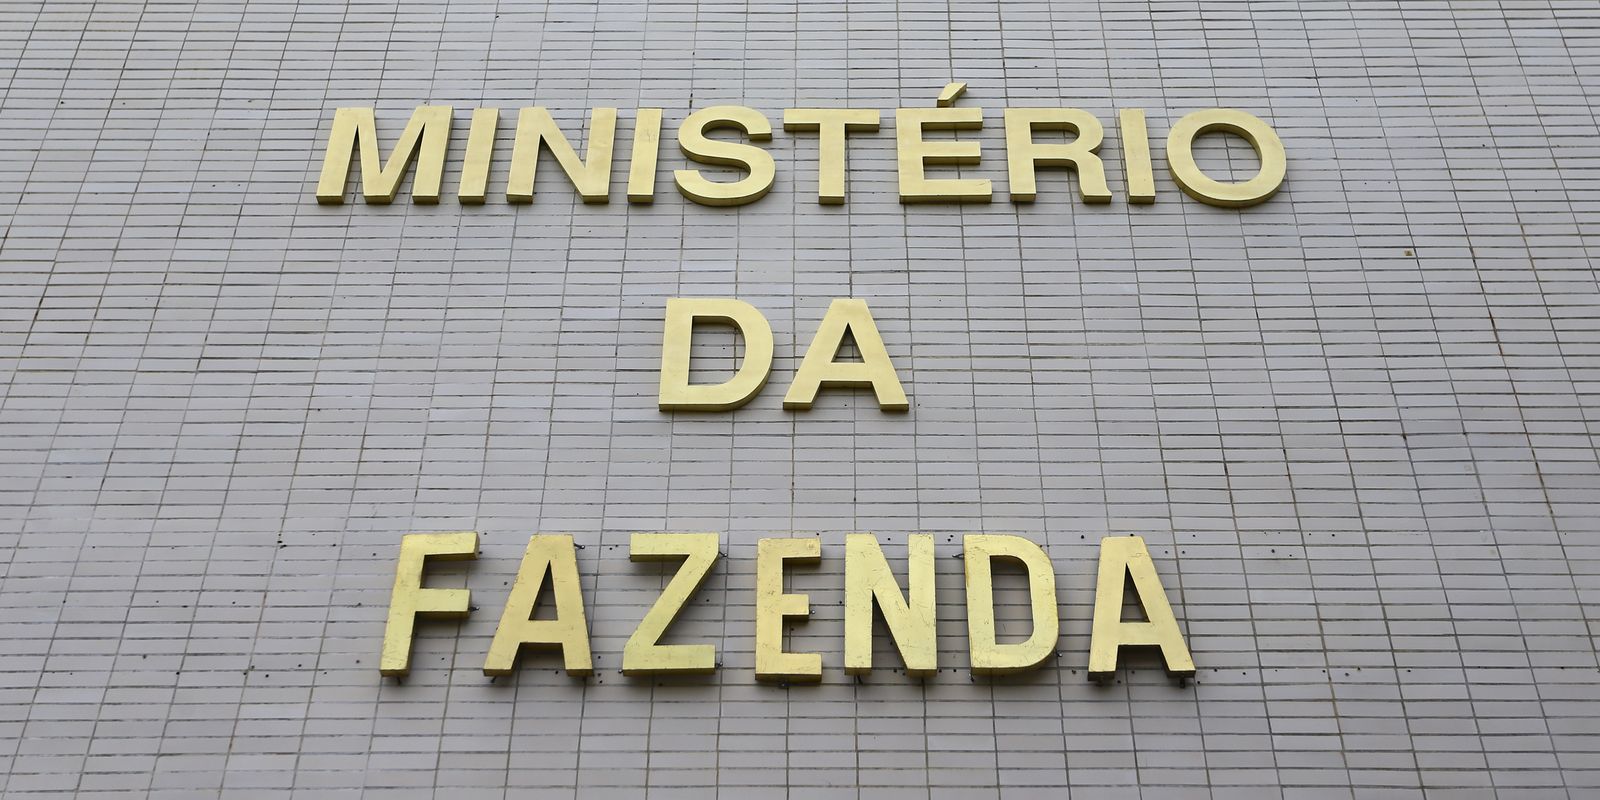 Portaria regulamenta regras para Desenrola Pequenos Negócios – Agência Brasil